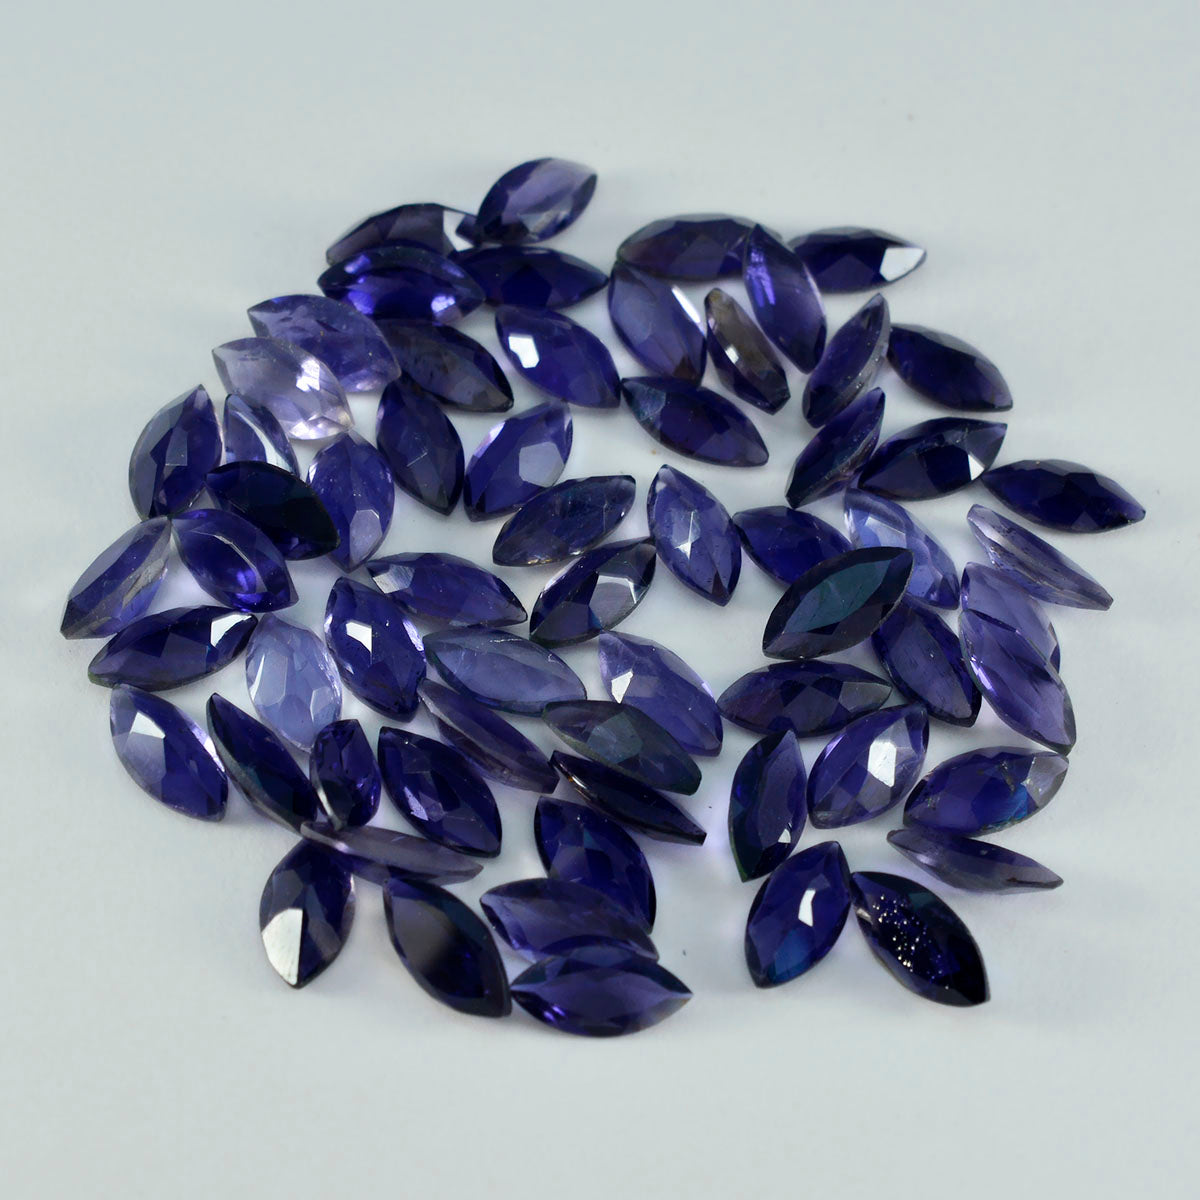 riyogems 1шт синий иолит ограненный 5x10 мм драгоценные камни в форме маркиза отличное качество